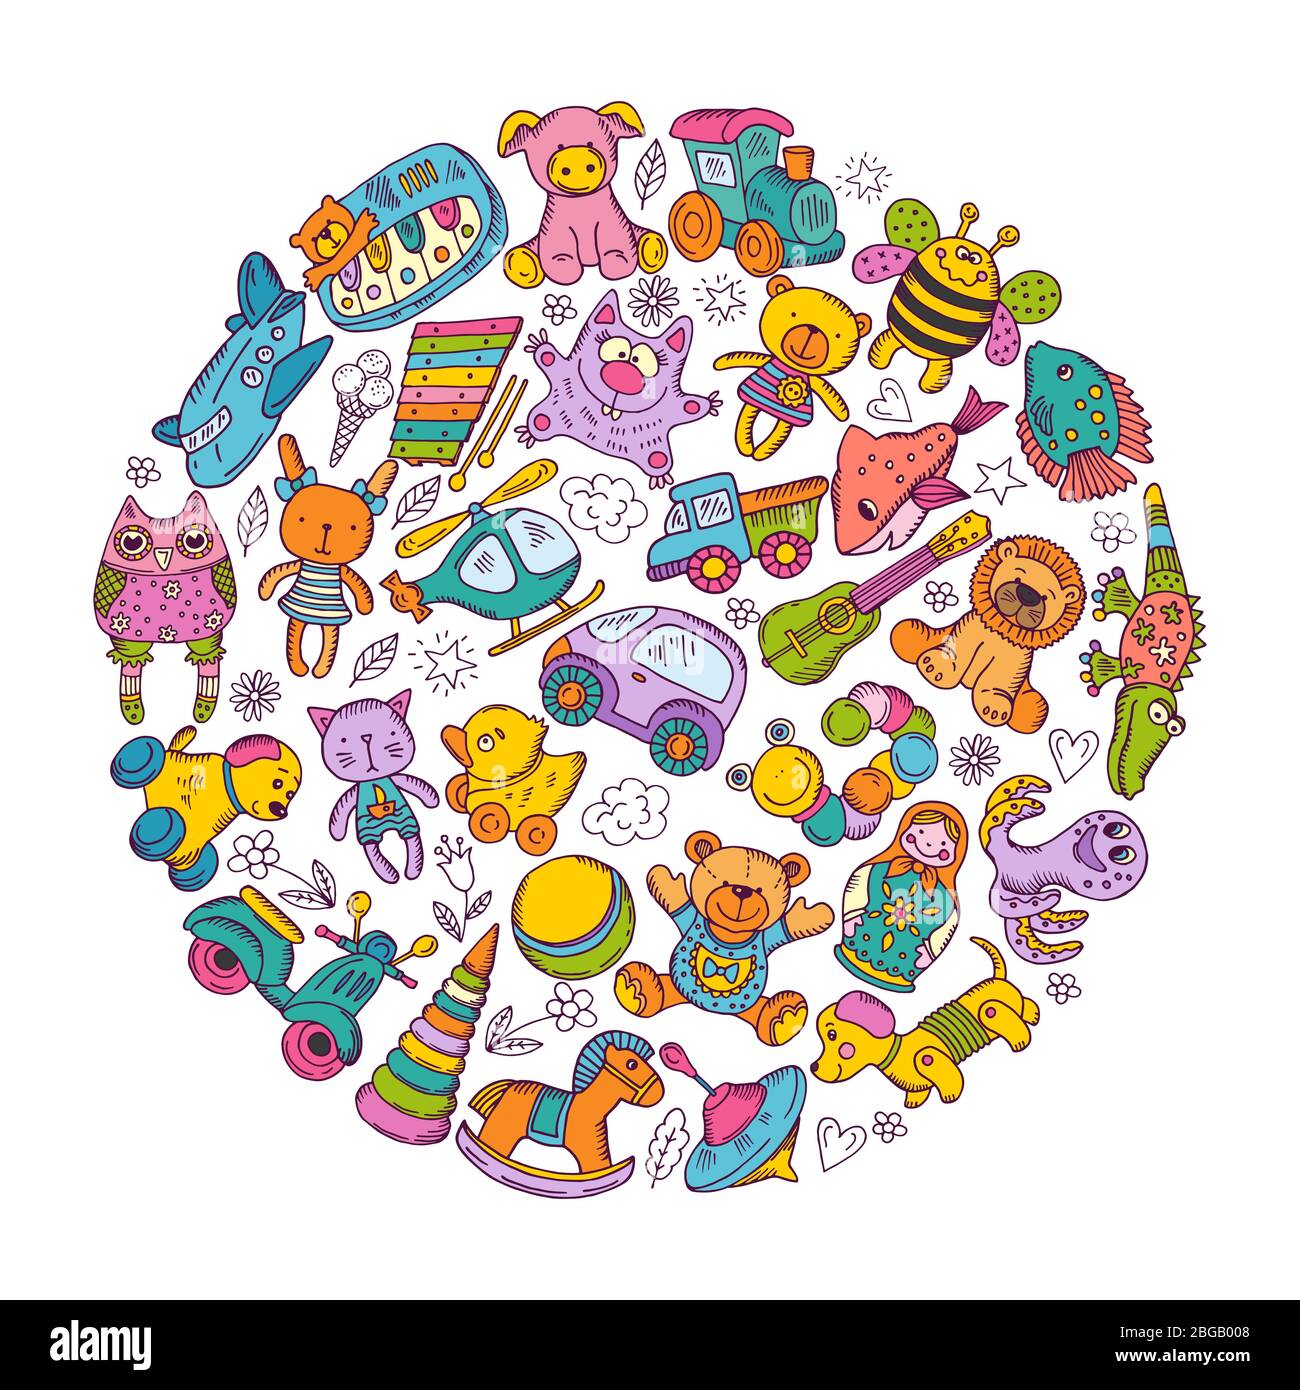 Kinder Spielzeug Symbol in Kreisform gesetzt. Vektorgrafiken zum Kritzeln Stock Vektor